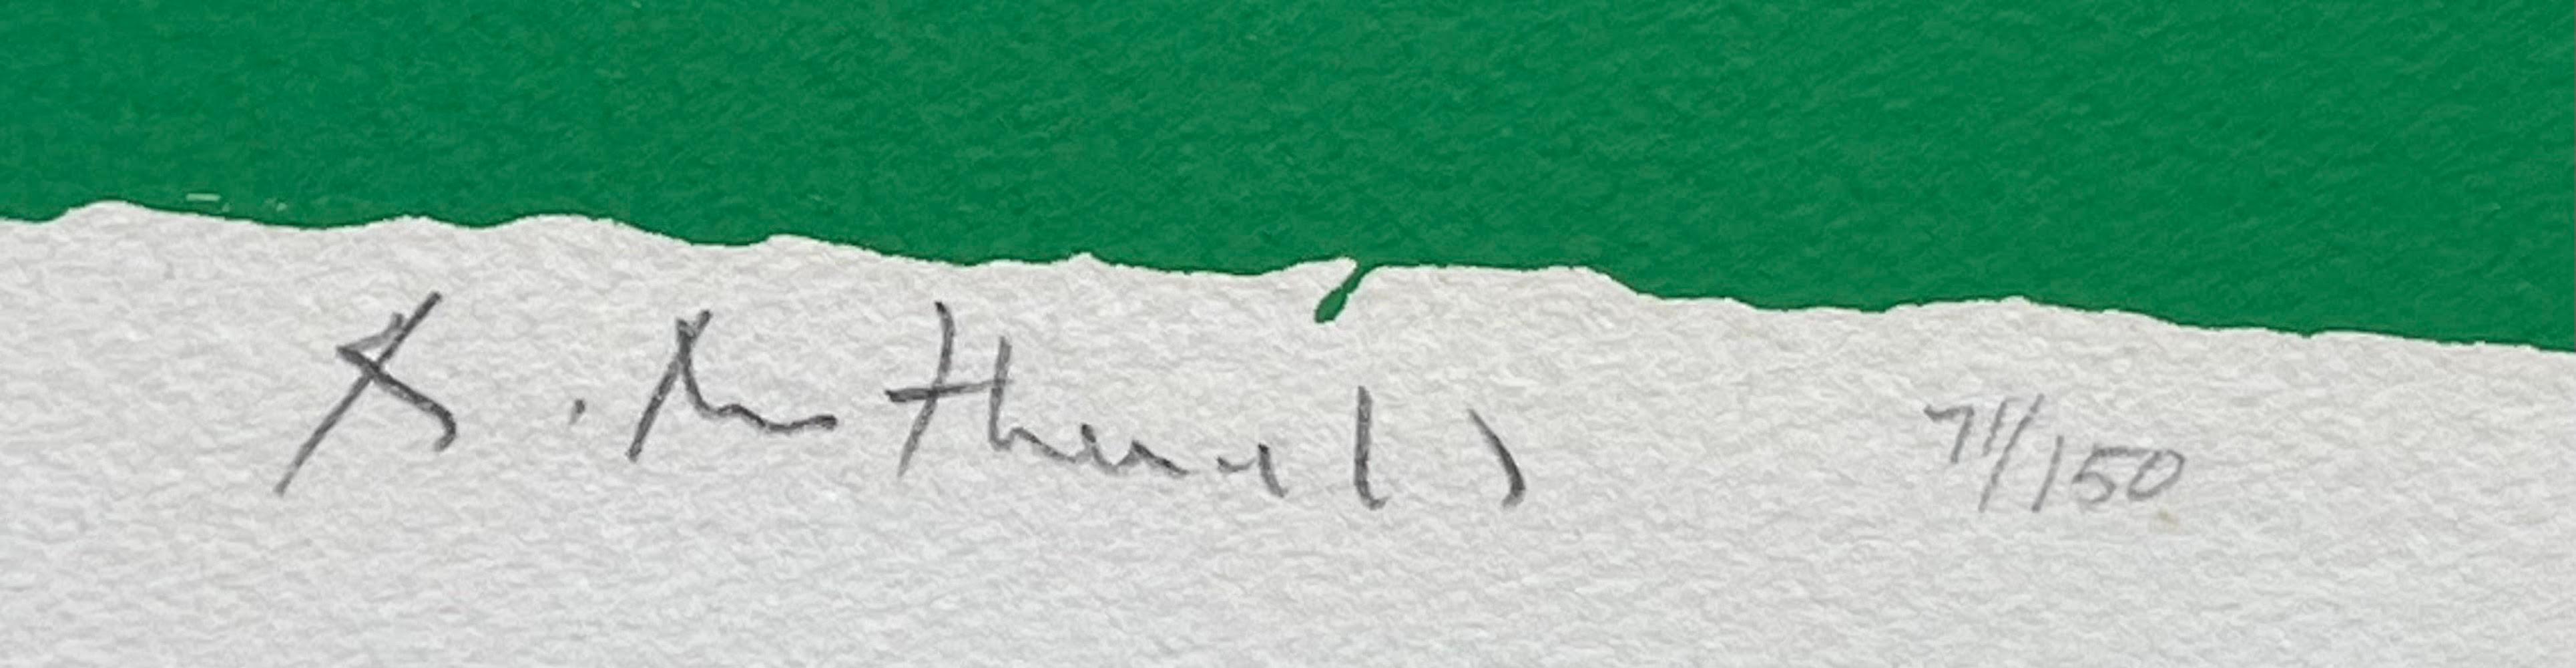 Robert Motherwell
Festival de Spoleto, 1968
Sérigraphie sur papier à l'eau-forte américain
Signée et numérotée 71/150 au crayon graphite au recto.
La littérature :
Référence : Fig 60 dans Motherwell 